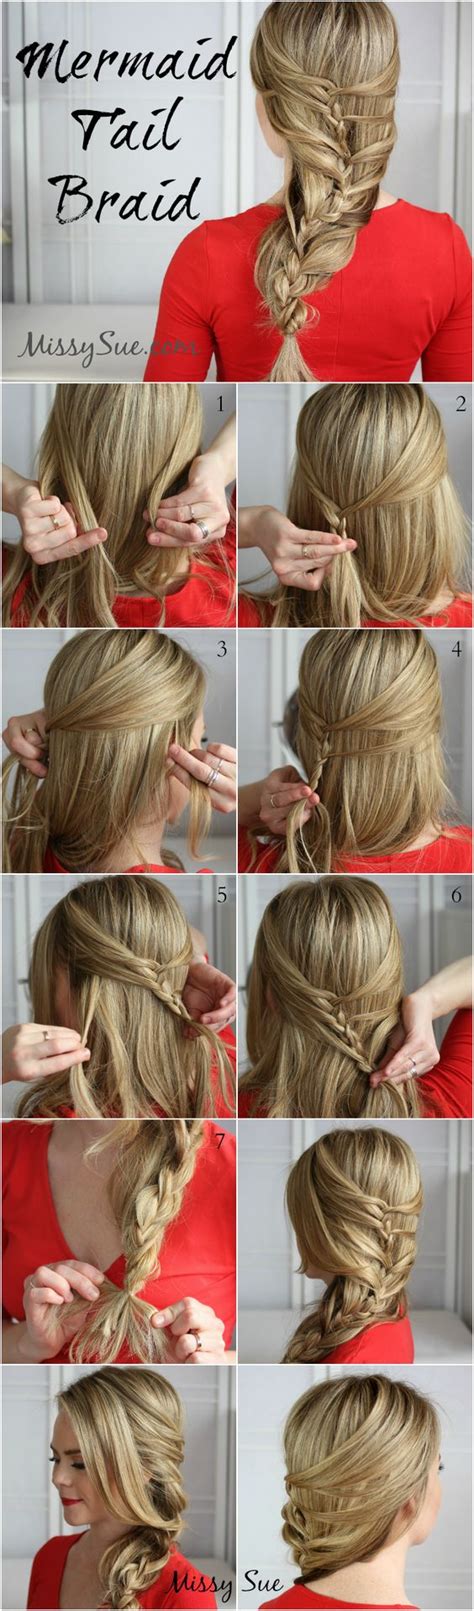 13 Step By Step Hair Tutorials To Style A Mermaid Braid Pretty Designs